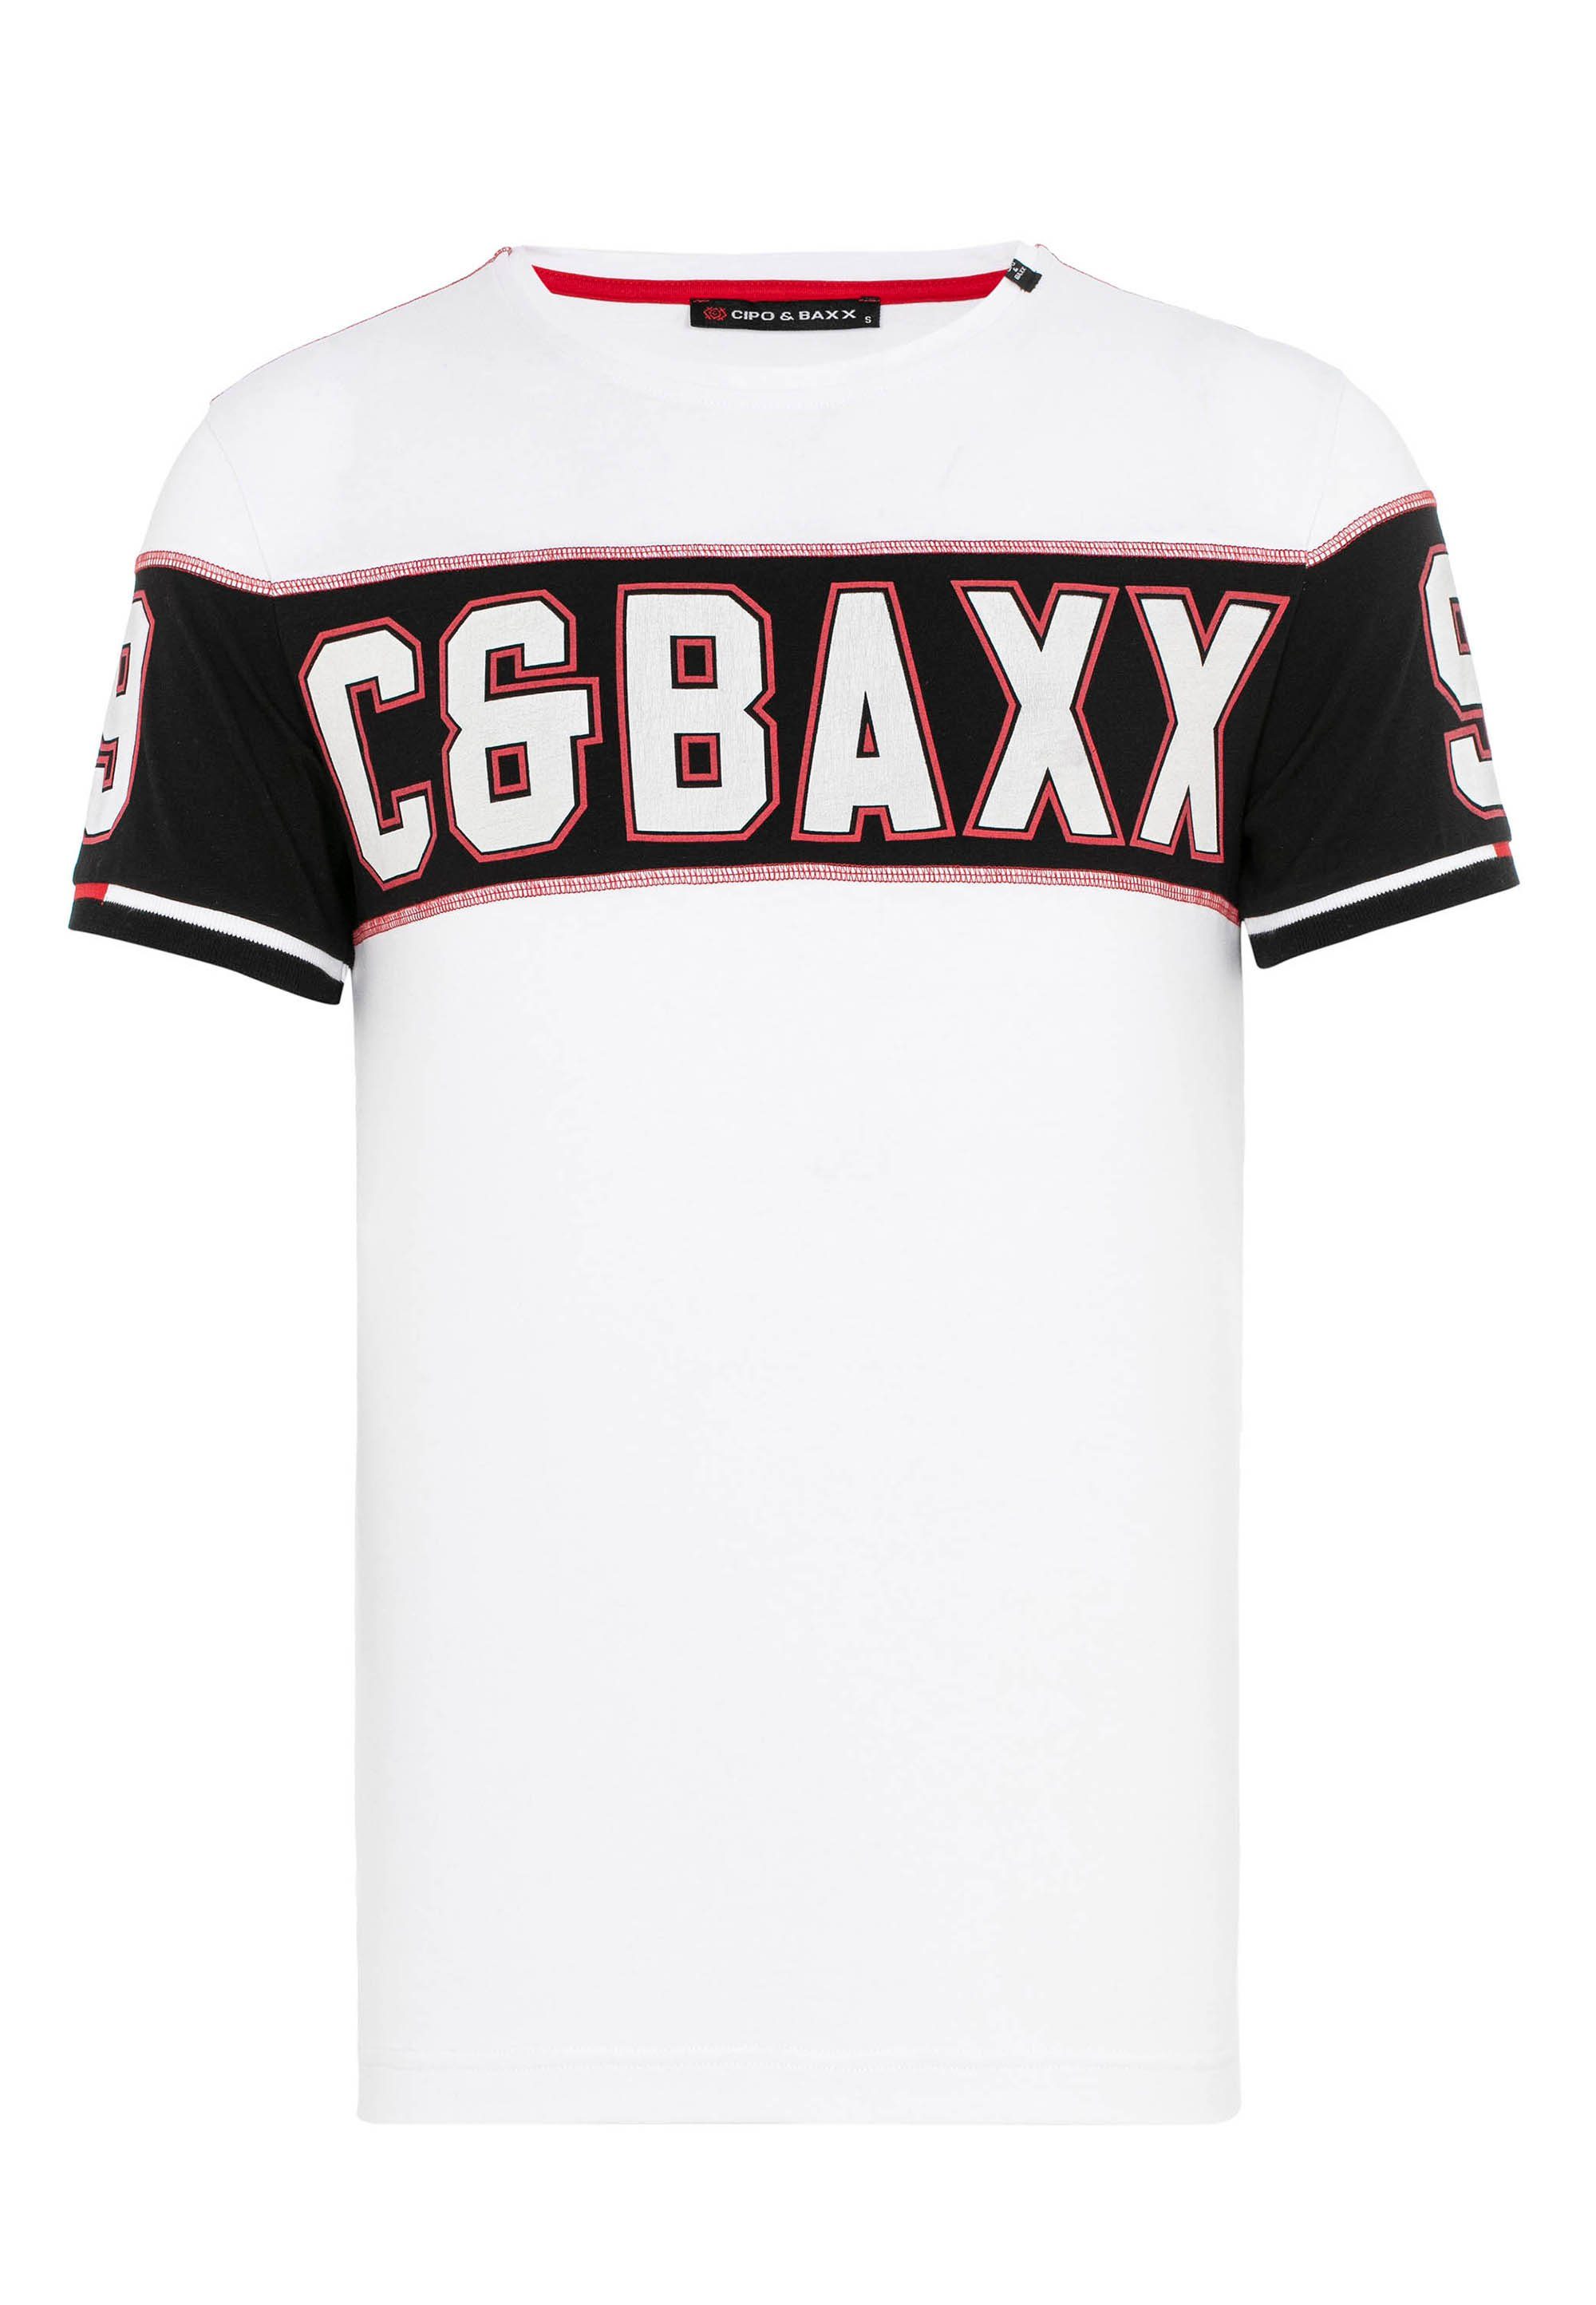 Baxx & mit weiß T-Shirt auffälligem Cipo Print